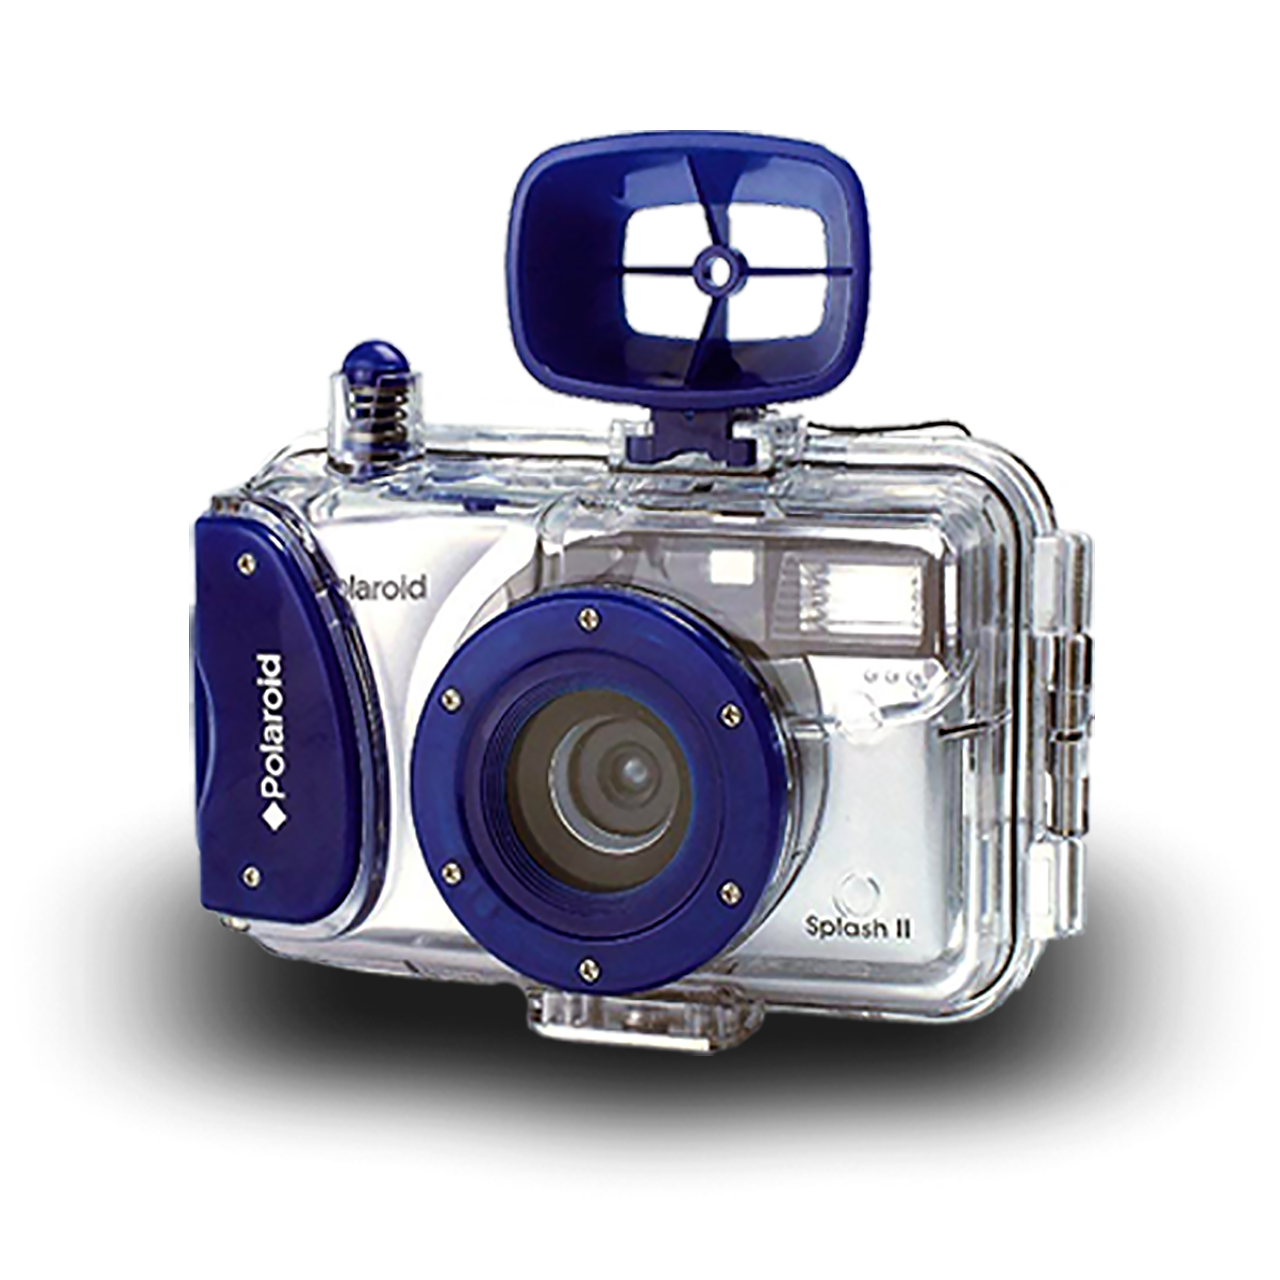 1280x1280px-Rechts-Polaroid-SPLASH-II-35mm-camera-vWA24